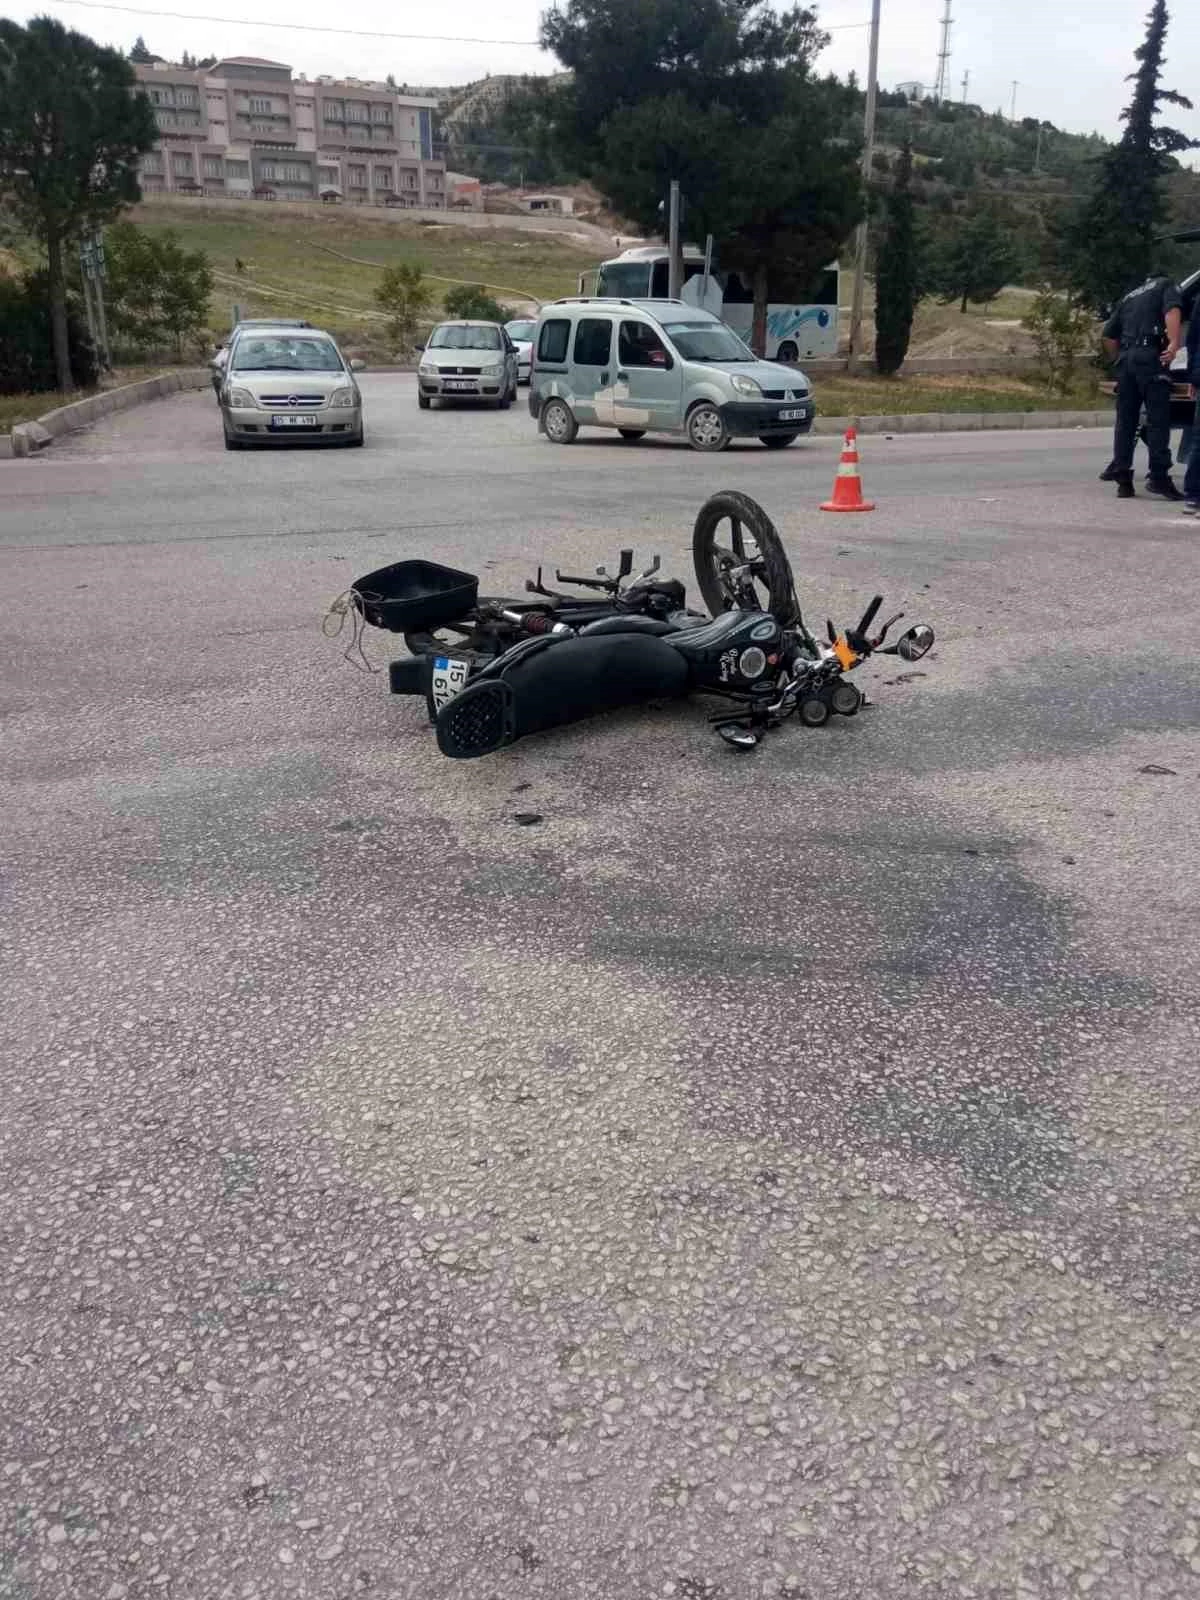 Isparta-Burdur karayolunda motosiklet ve otomobil çarpıştı, 2 kişi yaralandı